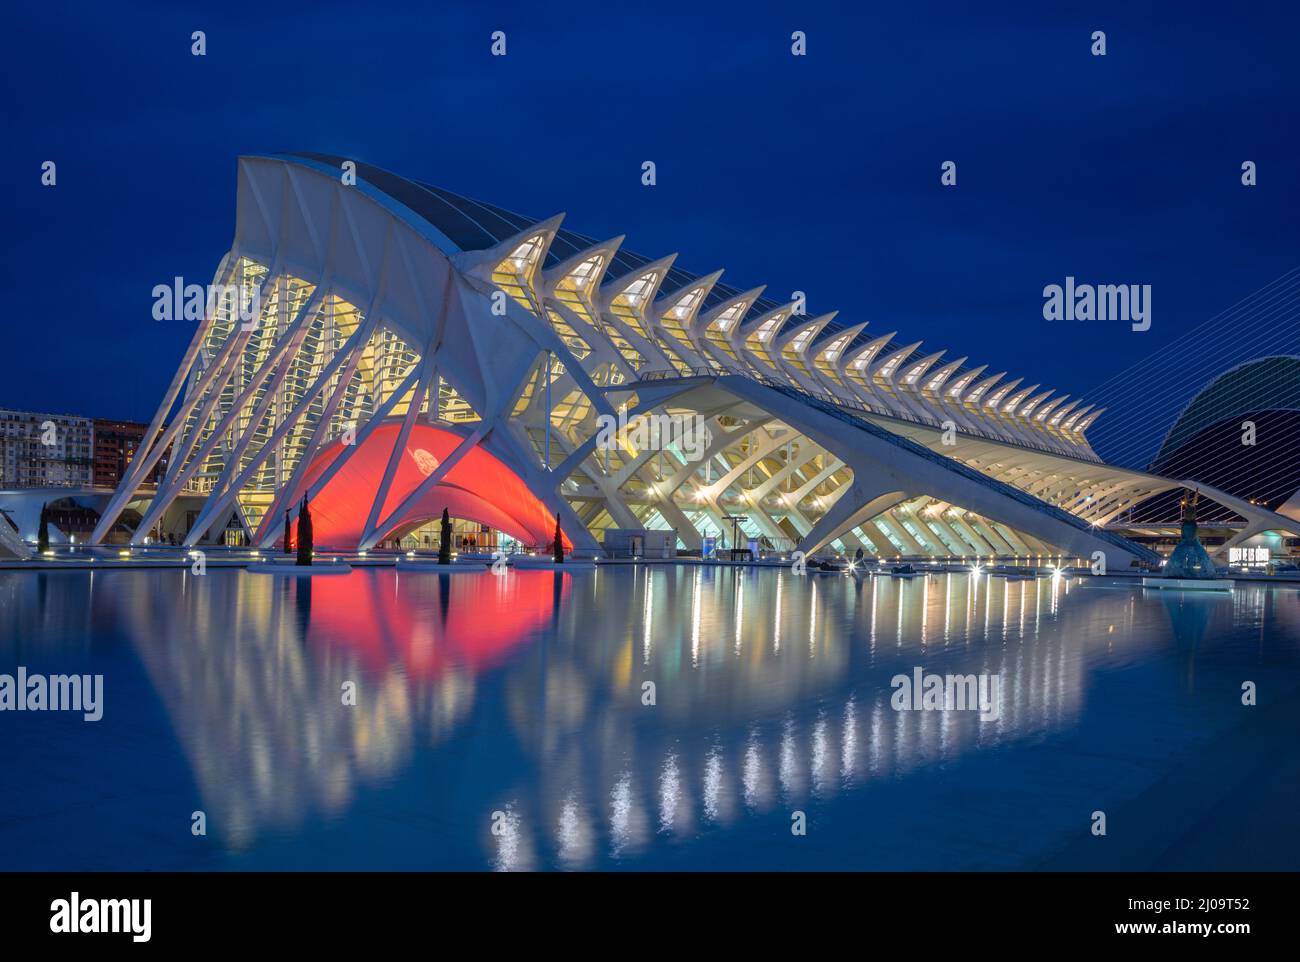 VALENCE, ESPAGNE - 15 FÉVRIER 2022 : la Cité des Arts - Musée des Sciences, conçu par l'architecte valencien Santiago Calatrava. Banque D'Images